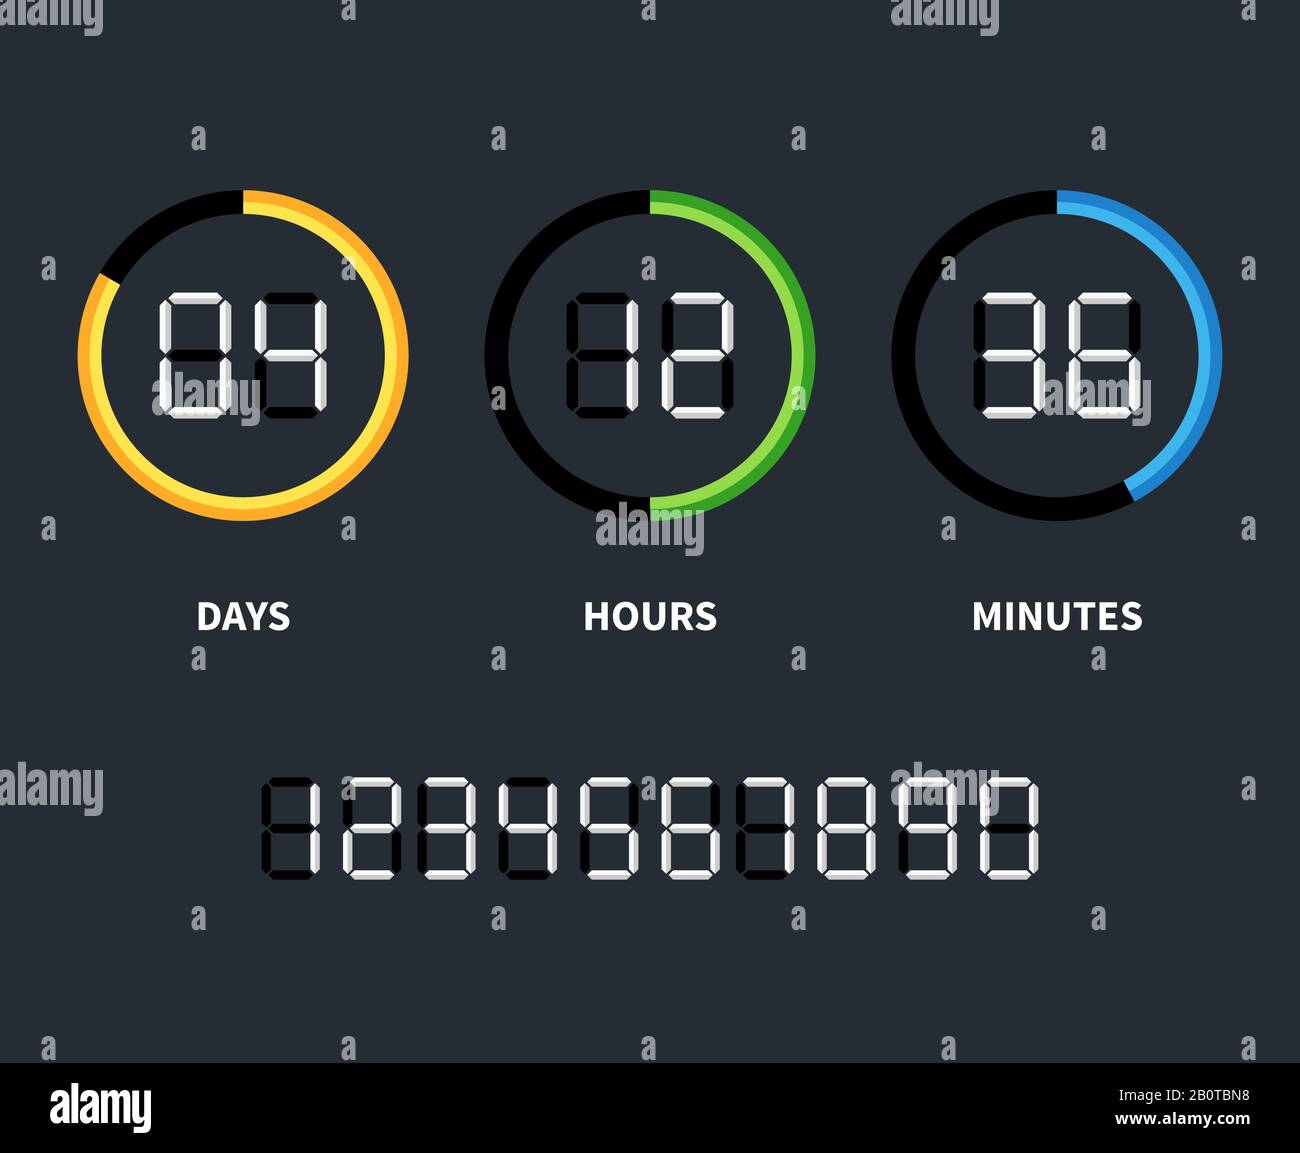 Digitaluhr oder Countdown-Timer. Vektorzeitkonzept. Countdown-Timer mit Tagen und Stunden, Abbildung der Countdown-Uhr Stock Vektor